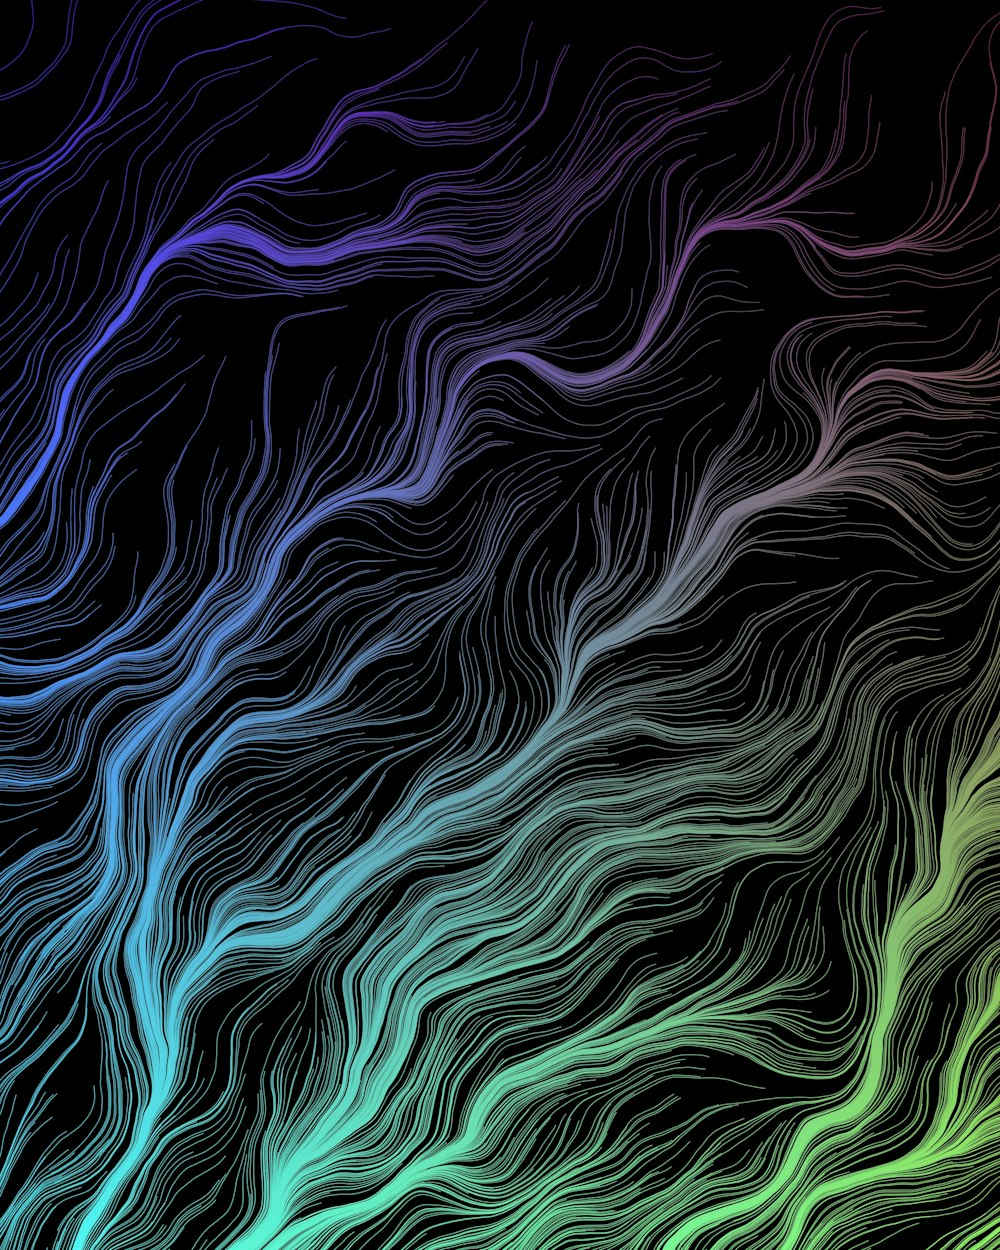 Un fond abstrait coloré avec des lignes ondulées